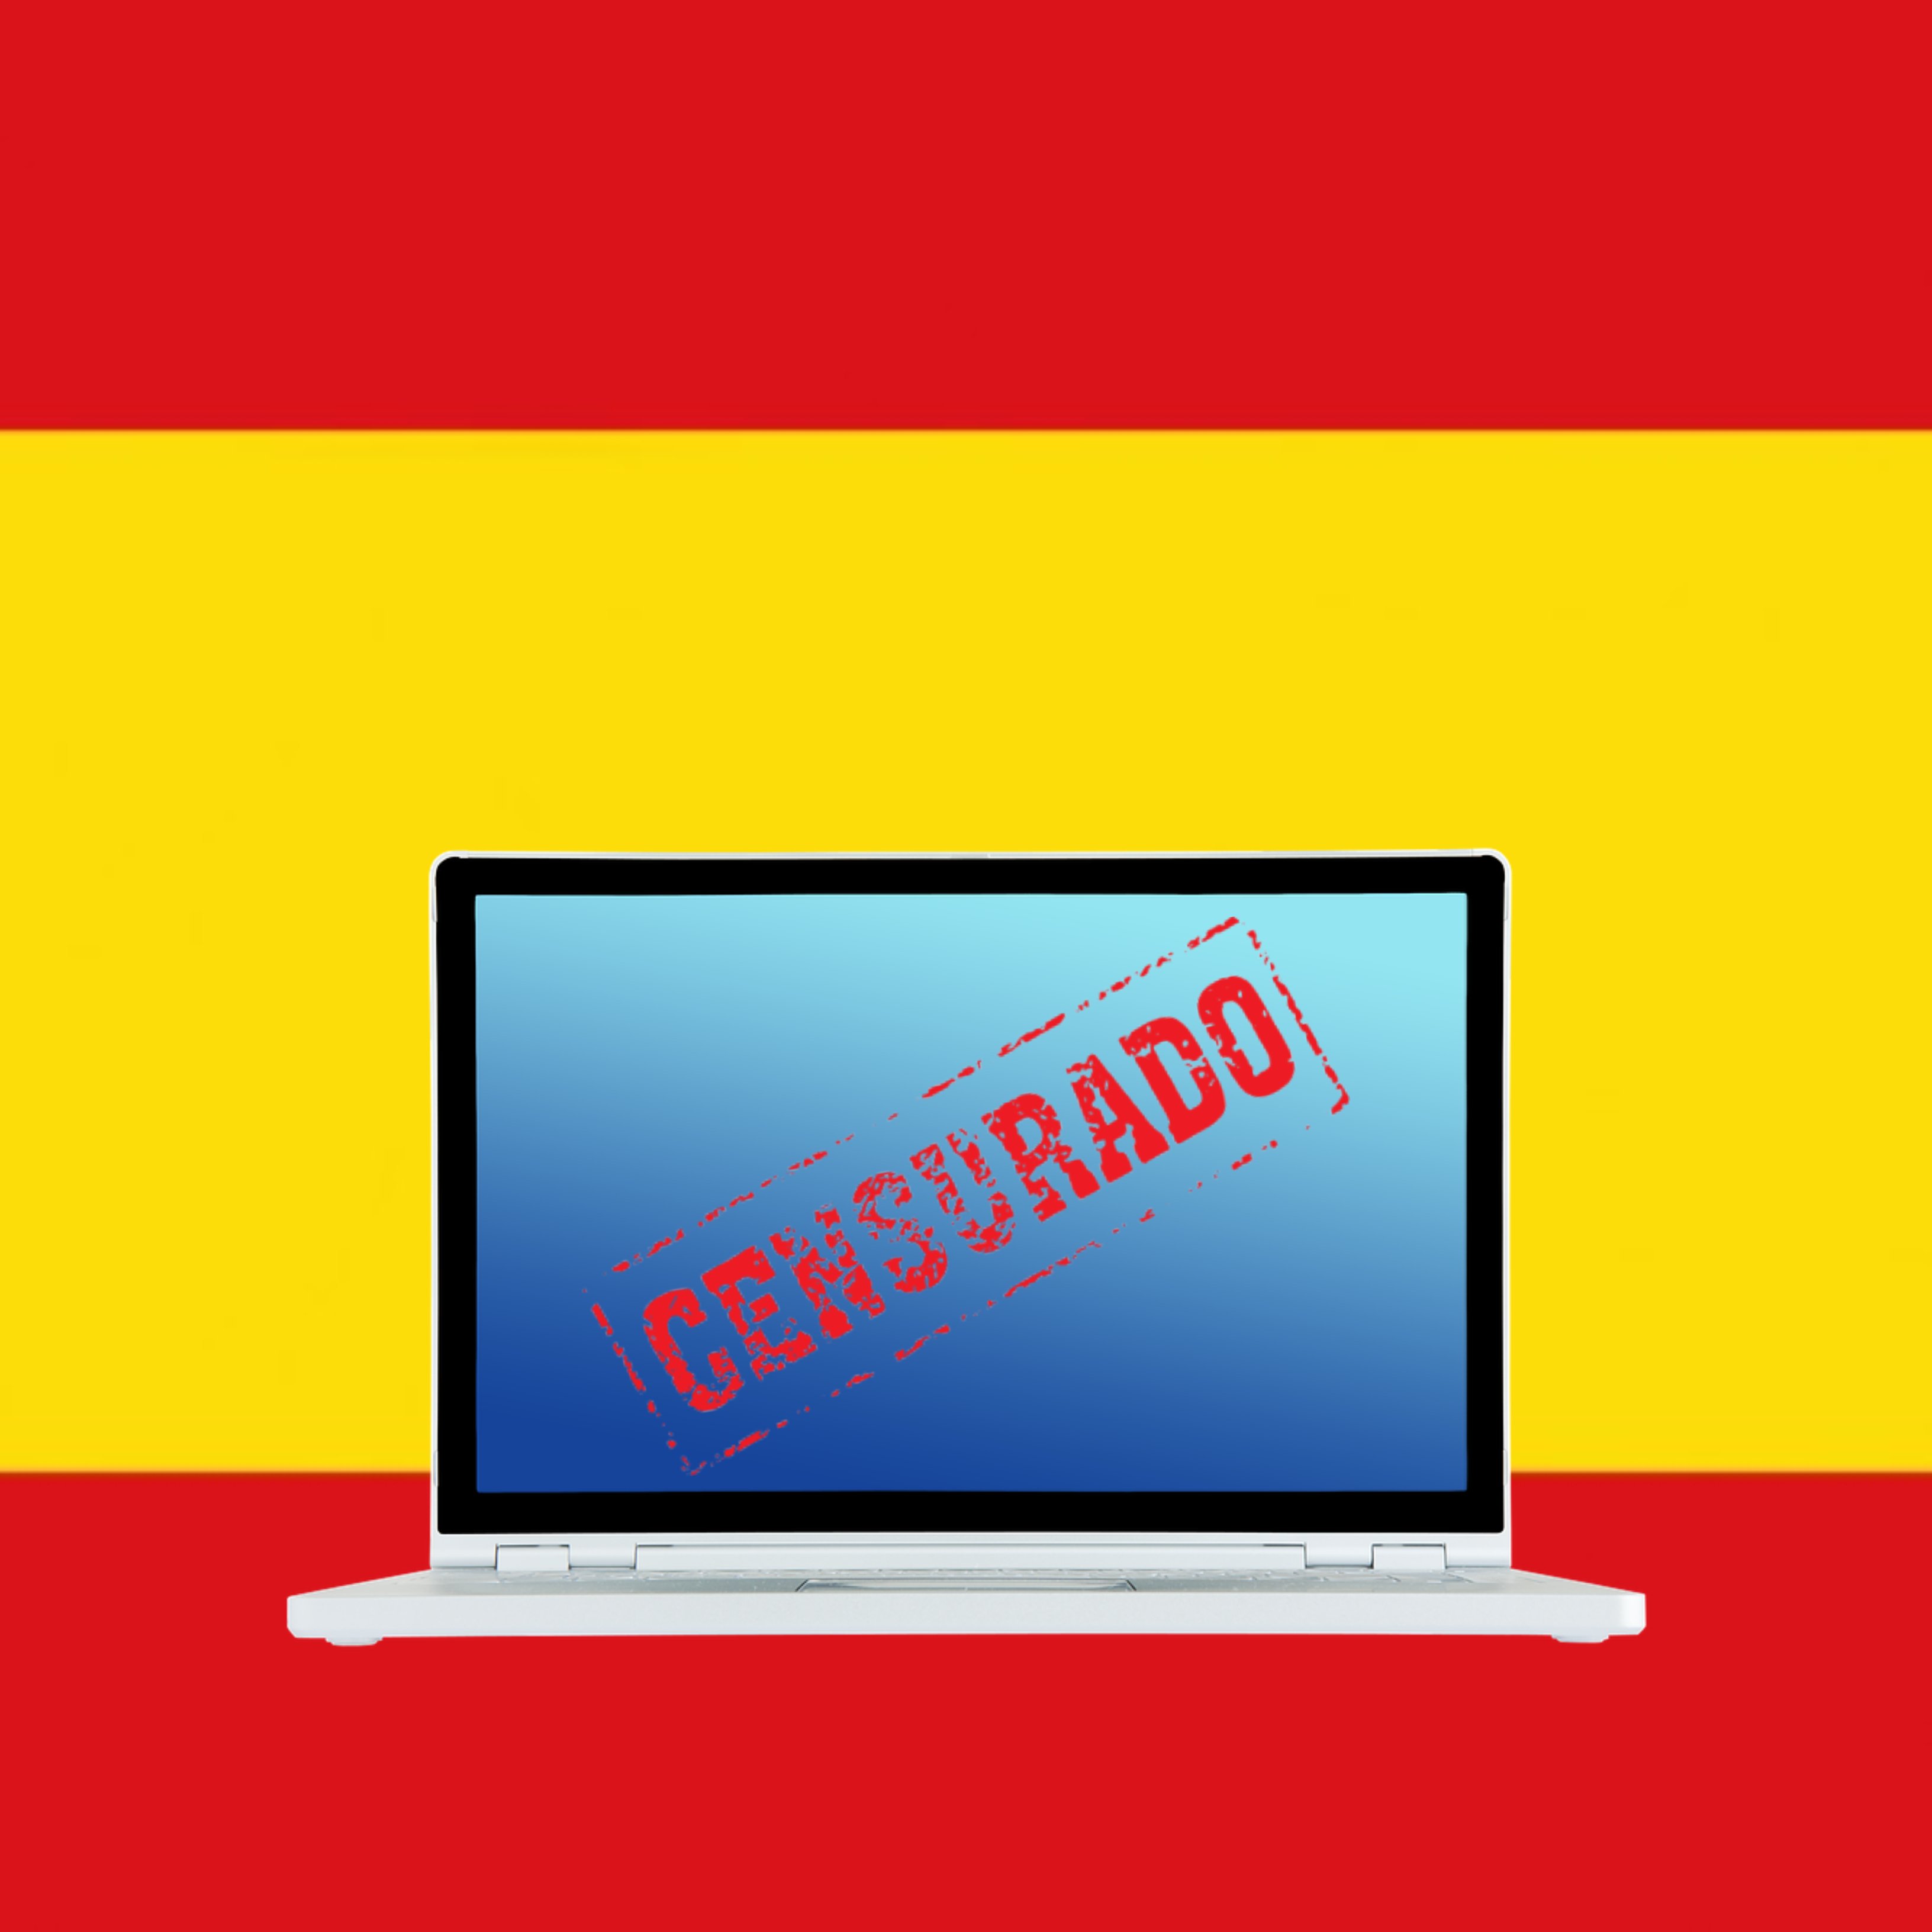 El 155 digital en España: desde el cierre de webs hasta cortar internet